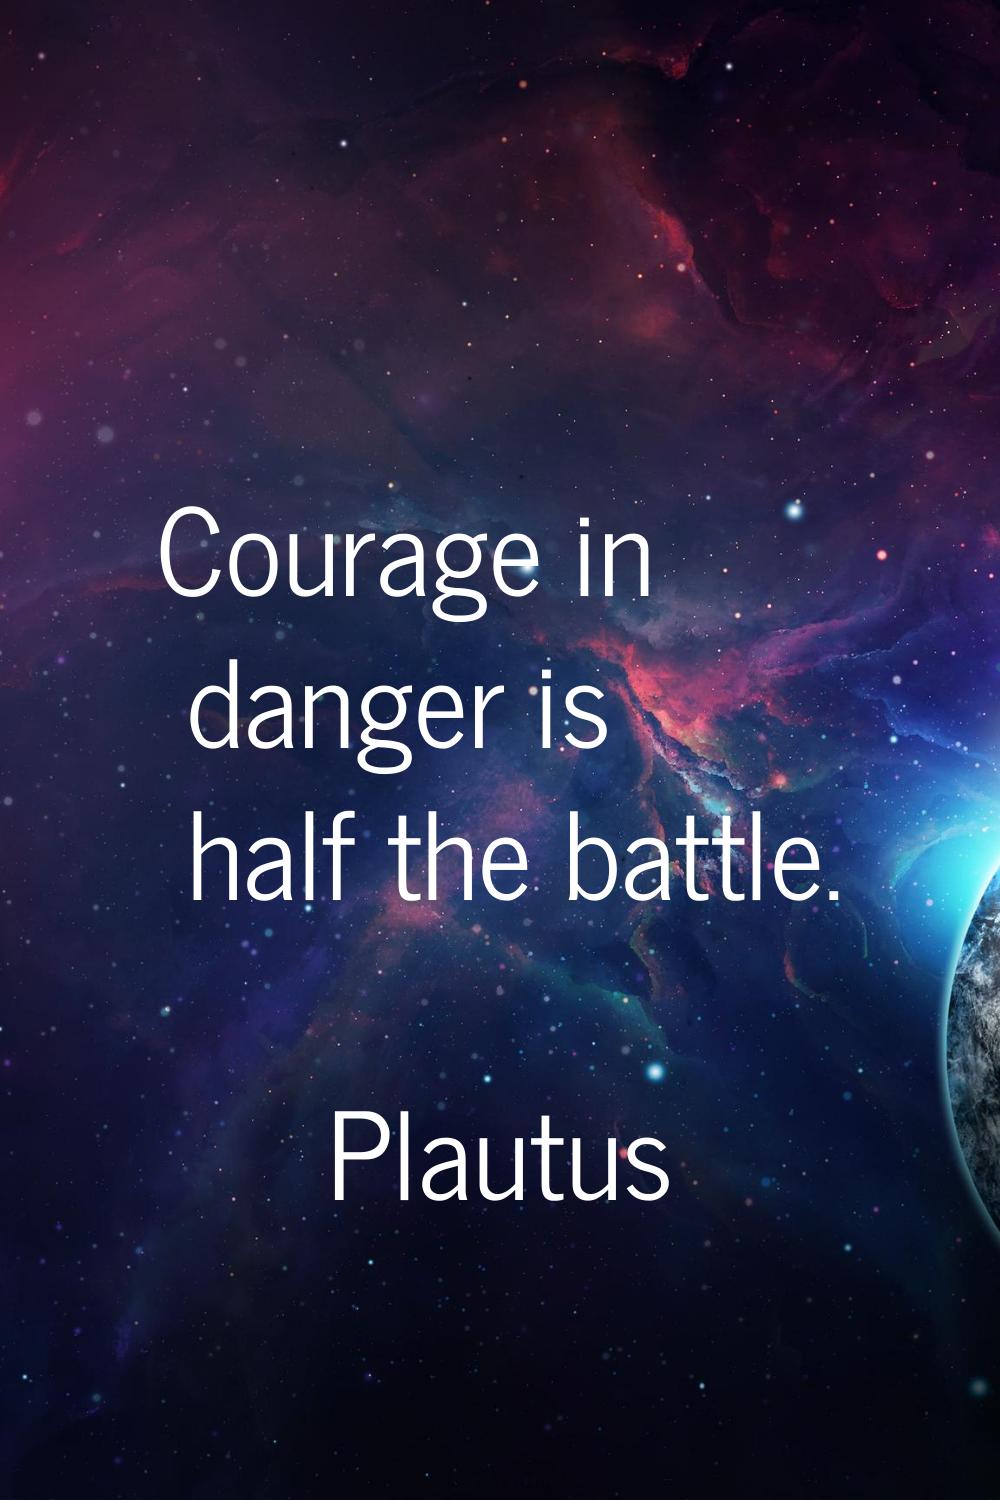 Courage in danger is half the battle.